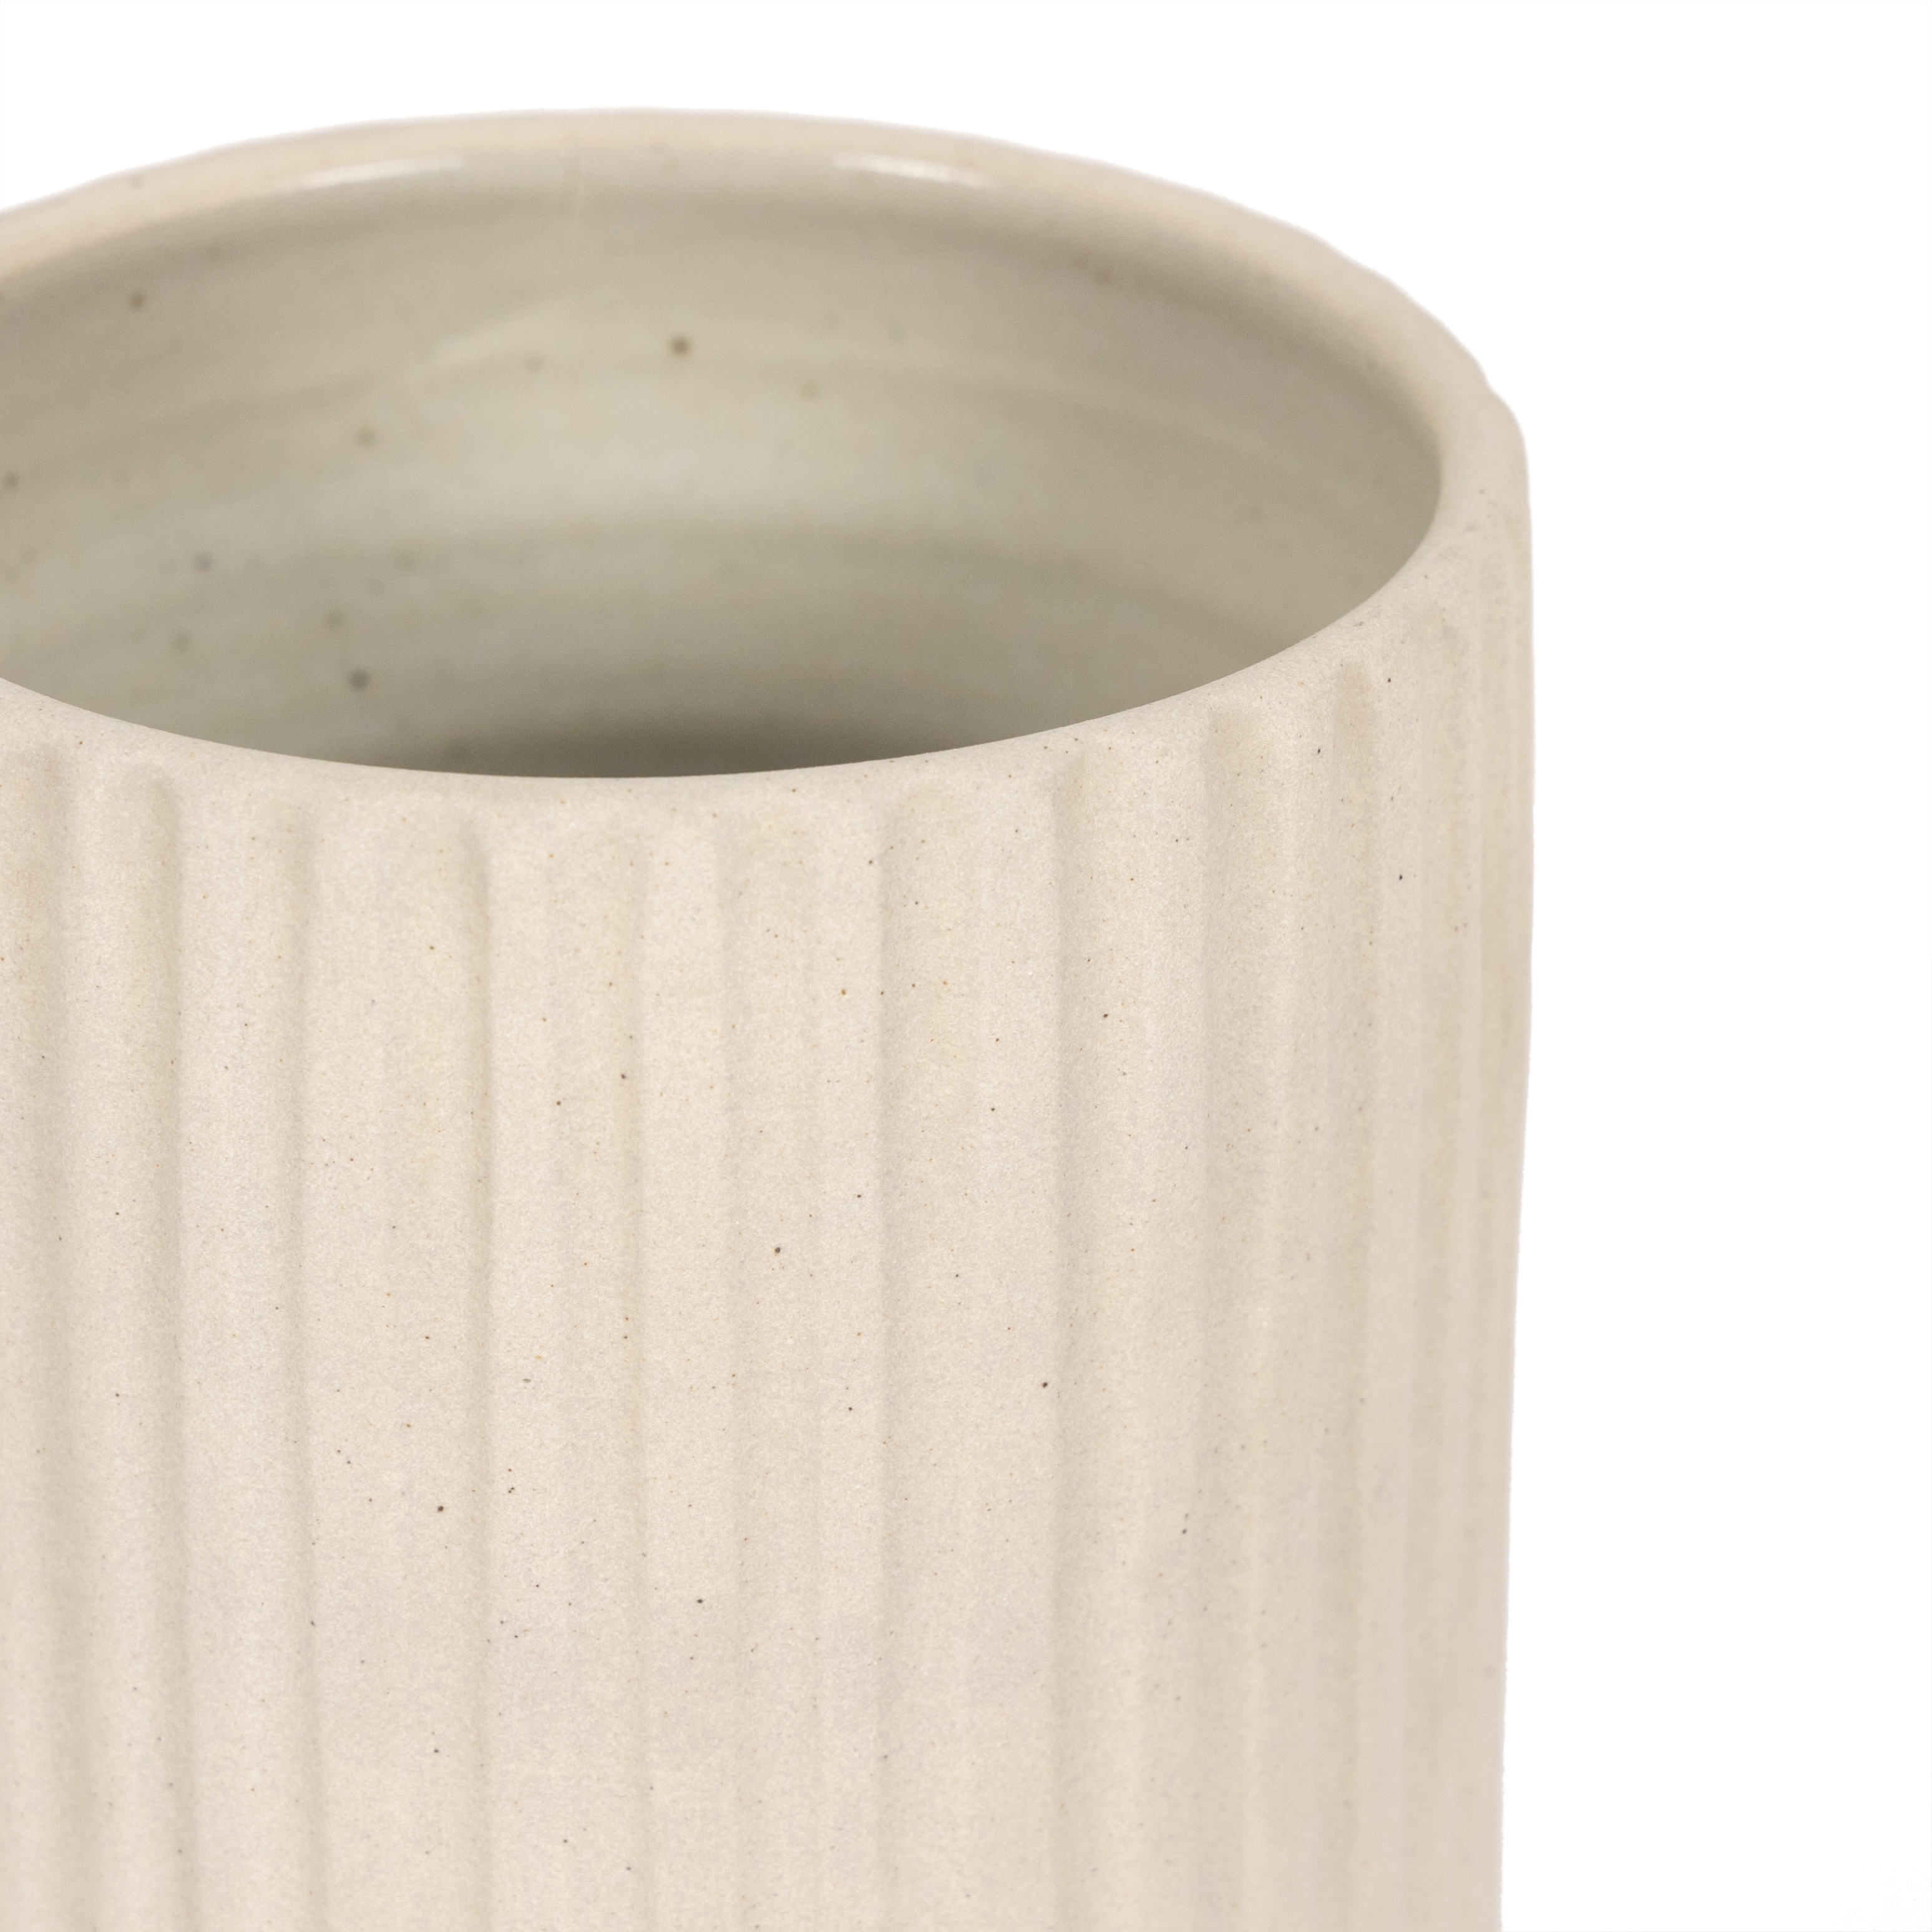 Julio Tall Vase-Cream Matte Ceramic - Image 2